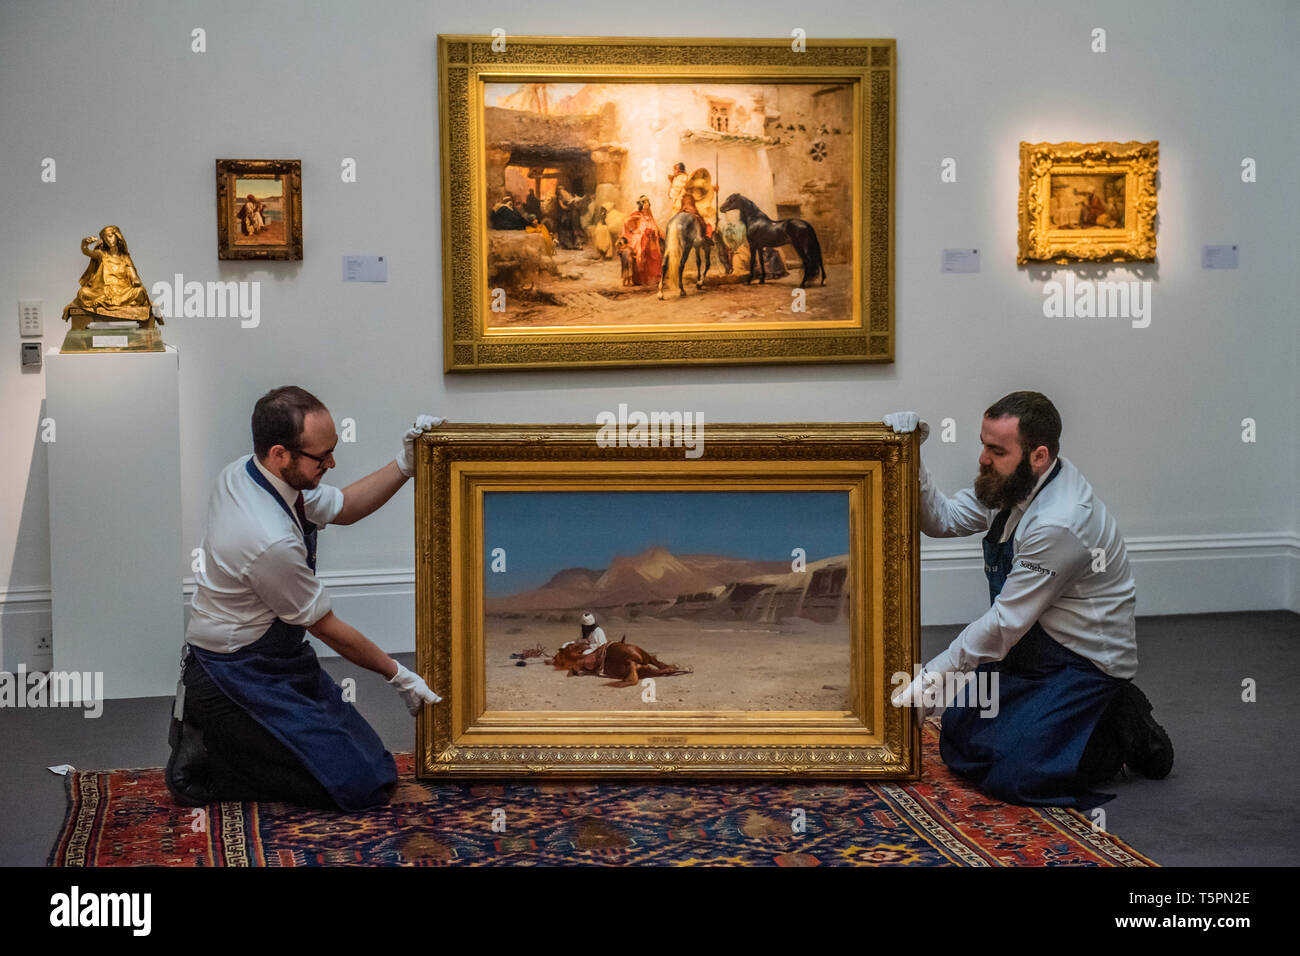 Sothebys, Londra, Regno Unito. 26 apr 2019. Jean-Léon Gérôme, pilota e il suo destriero nel deserto, olio su tela, 1872, preventivo£1,000,000-1,500.000 e altre opere in vendita orientalista - un'anteprima di 1.200 anni di Centro Arte Orientale da Sotheby's a Londra. Le aste si svolgerà il 30 aprile e il 1 maggio. Credito: Guy Bell/Alamy Live News Foto Stock